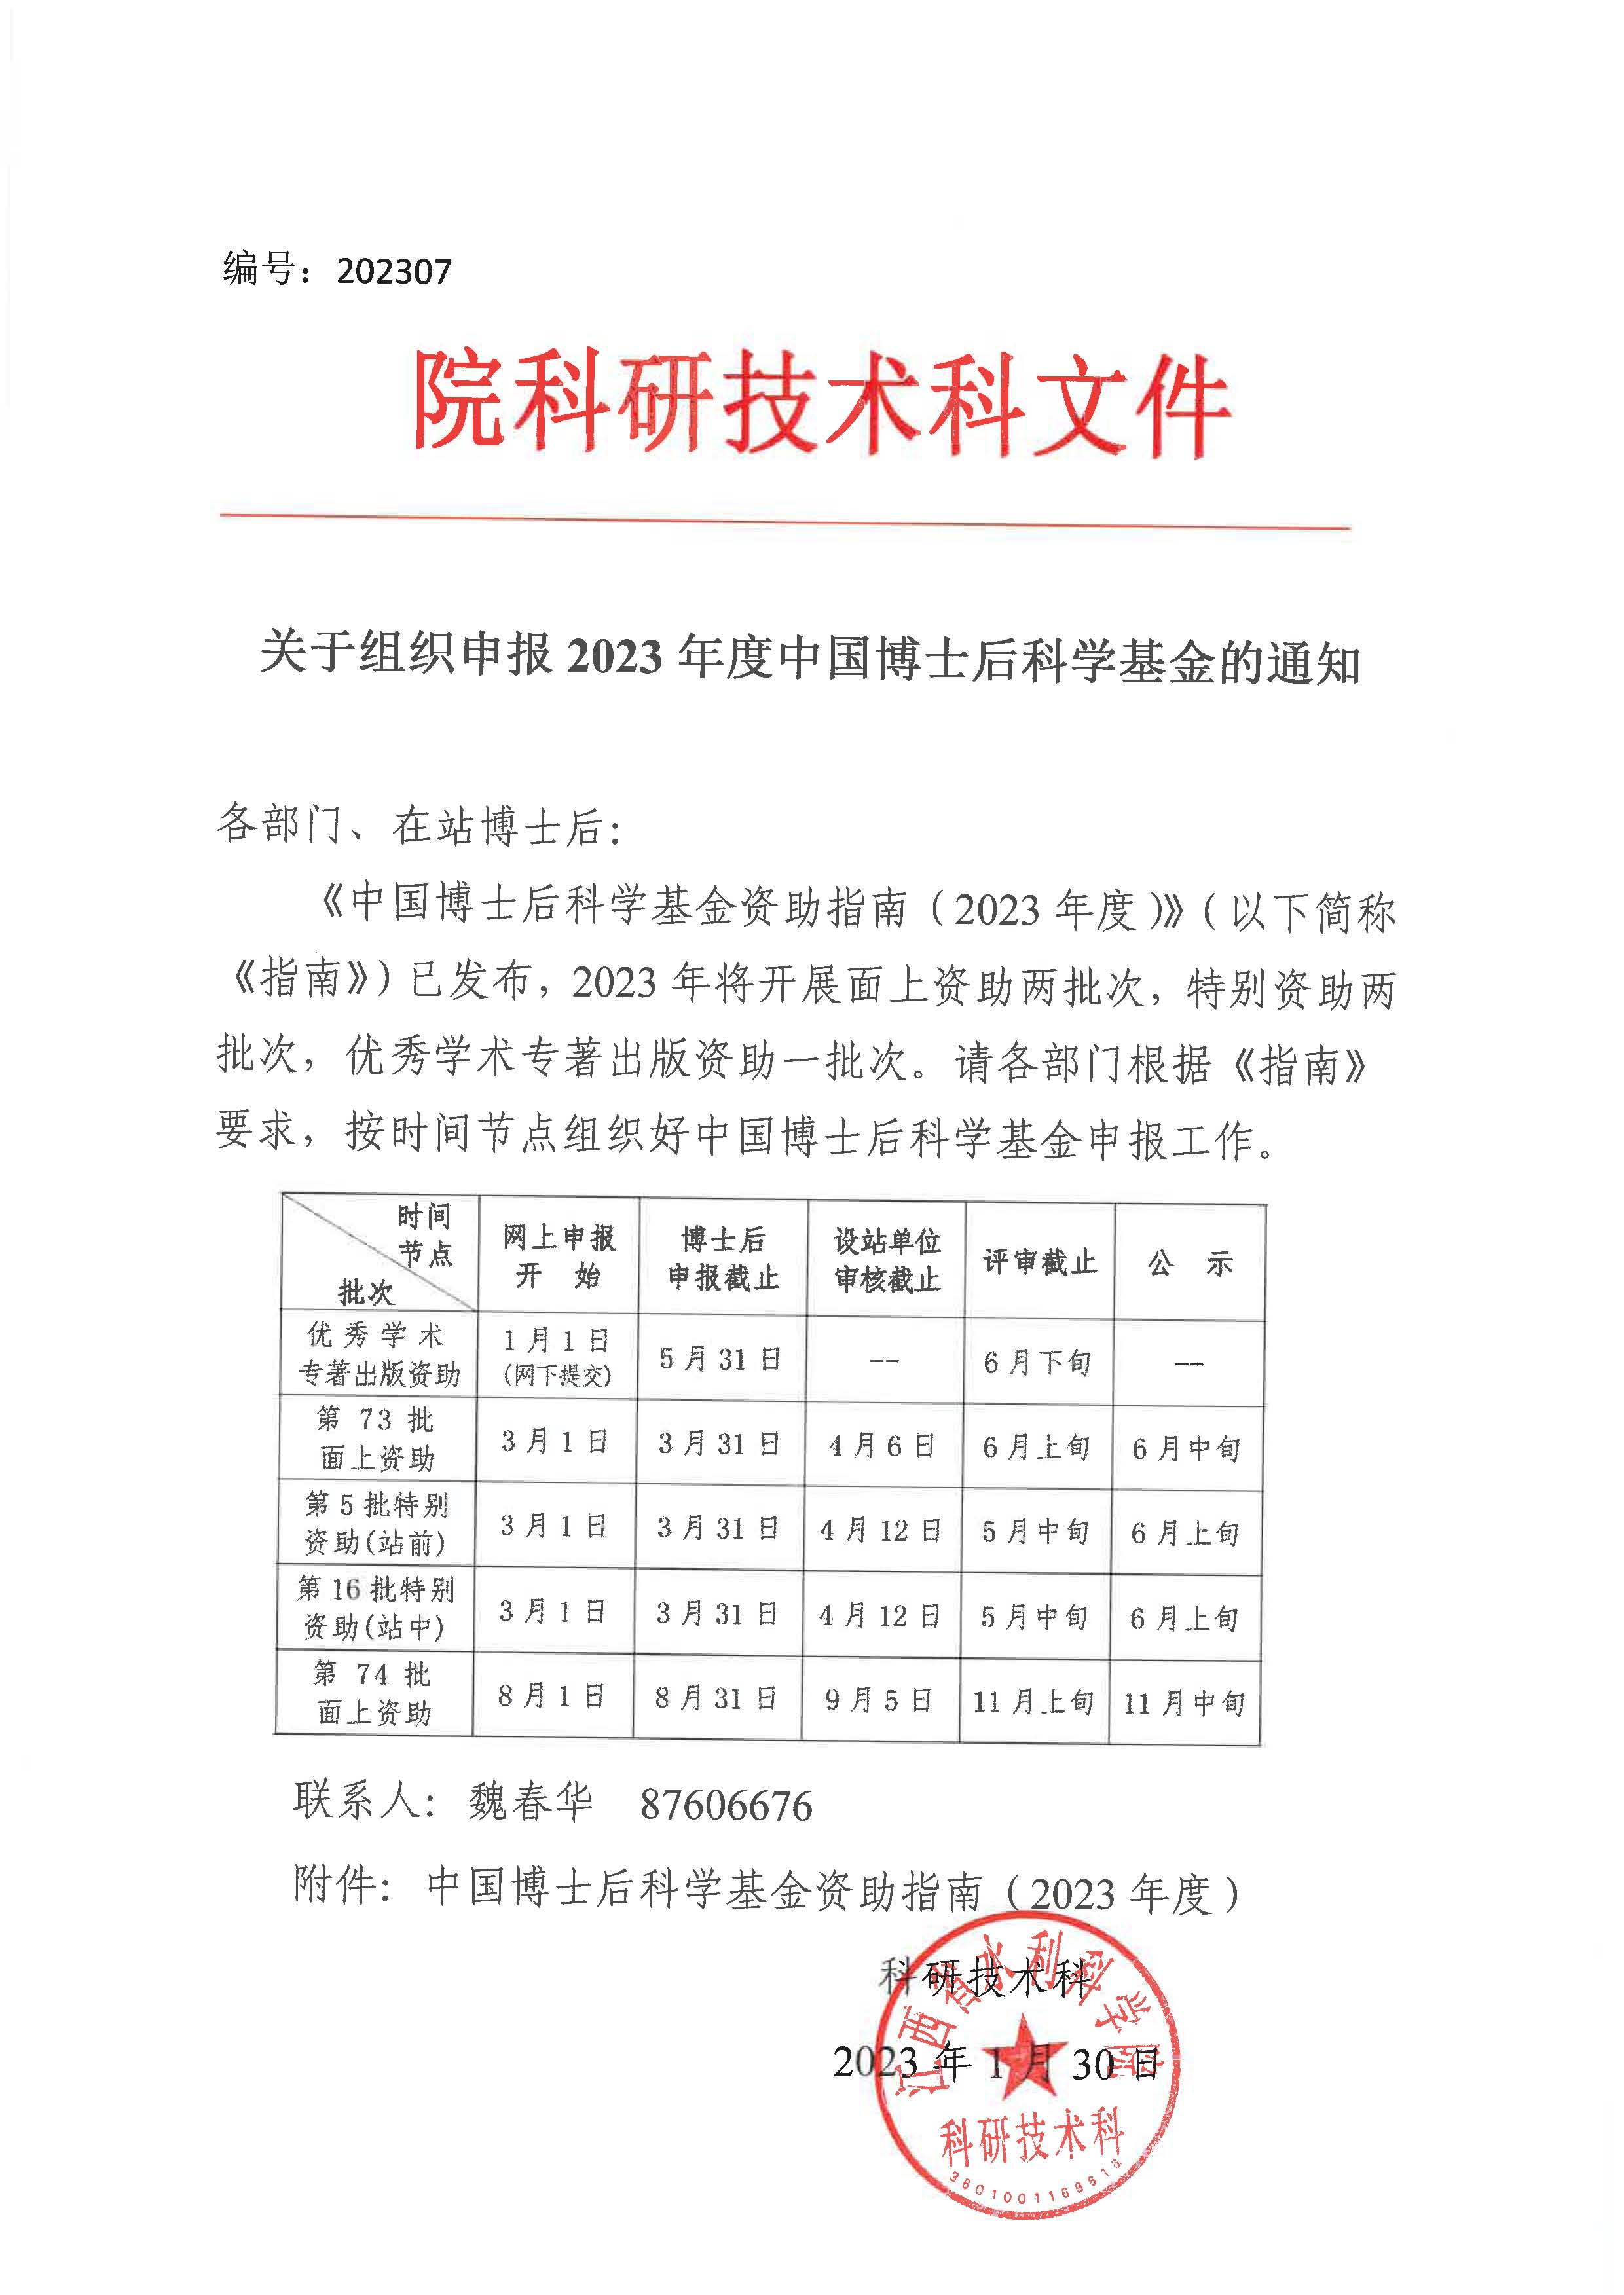 关于组织申报2023年度中国博士后科学基金的通知.jpg